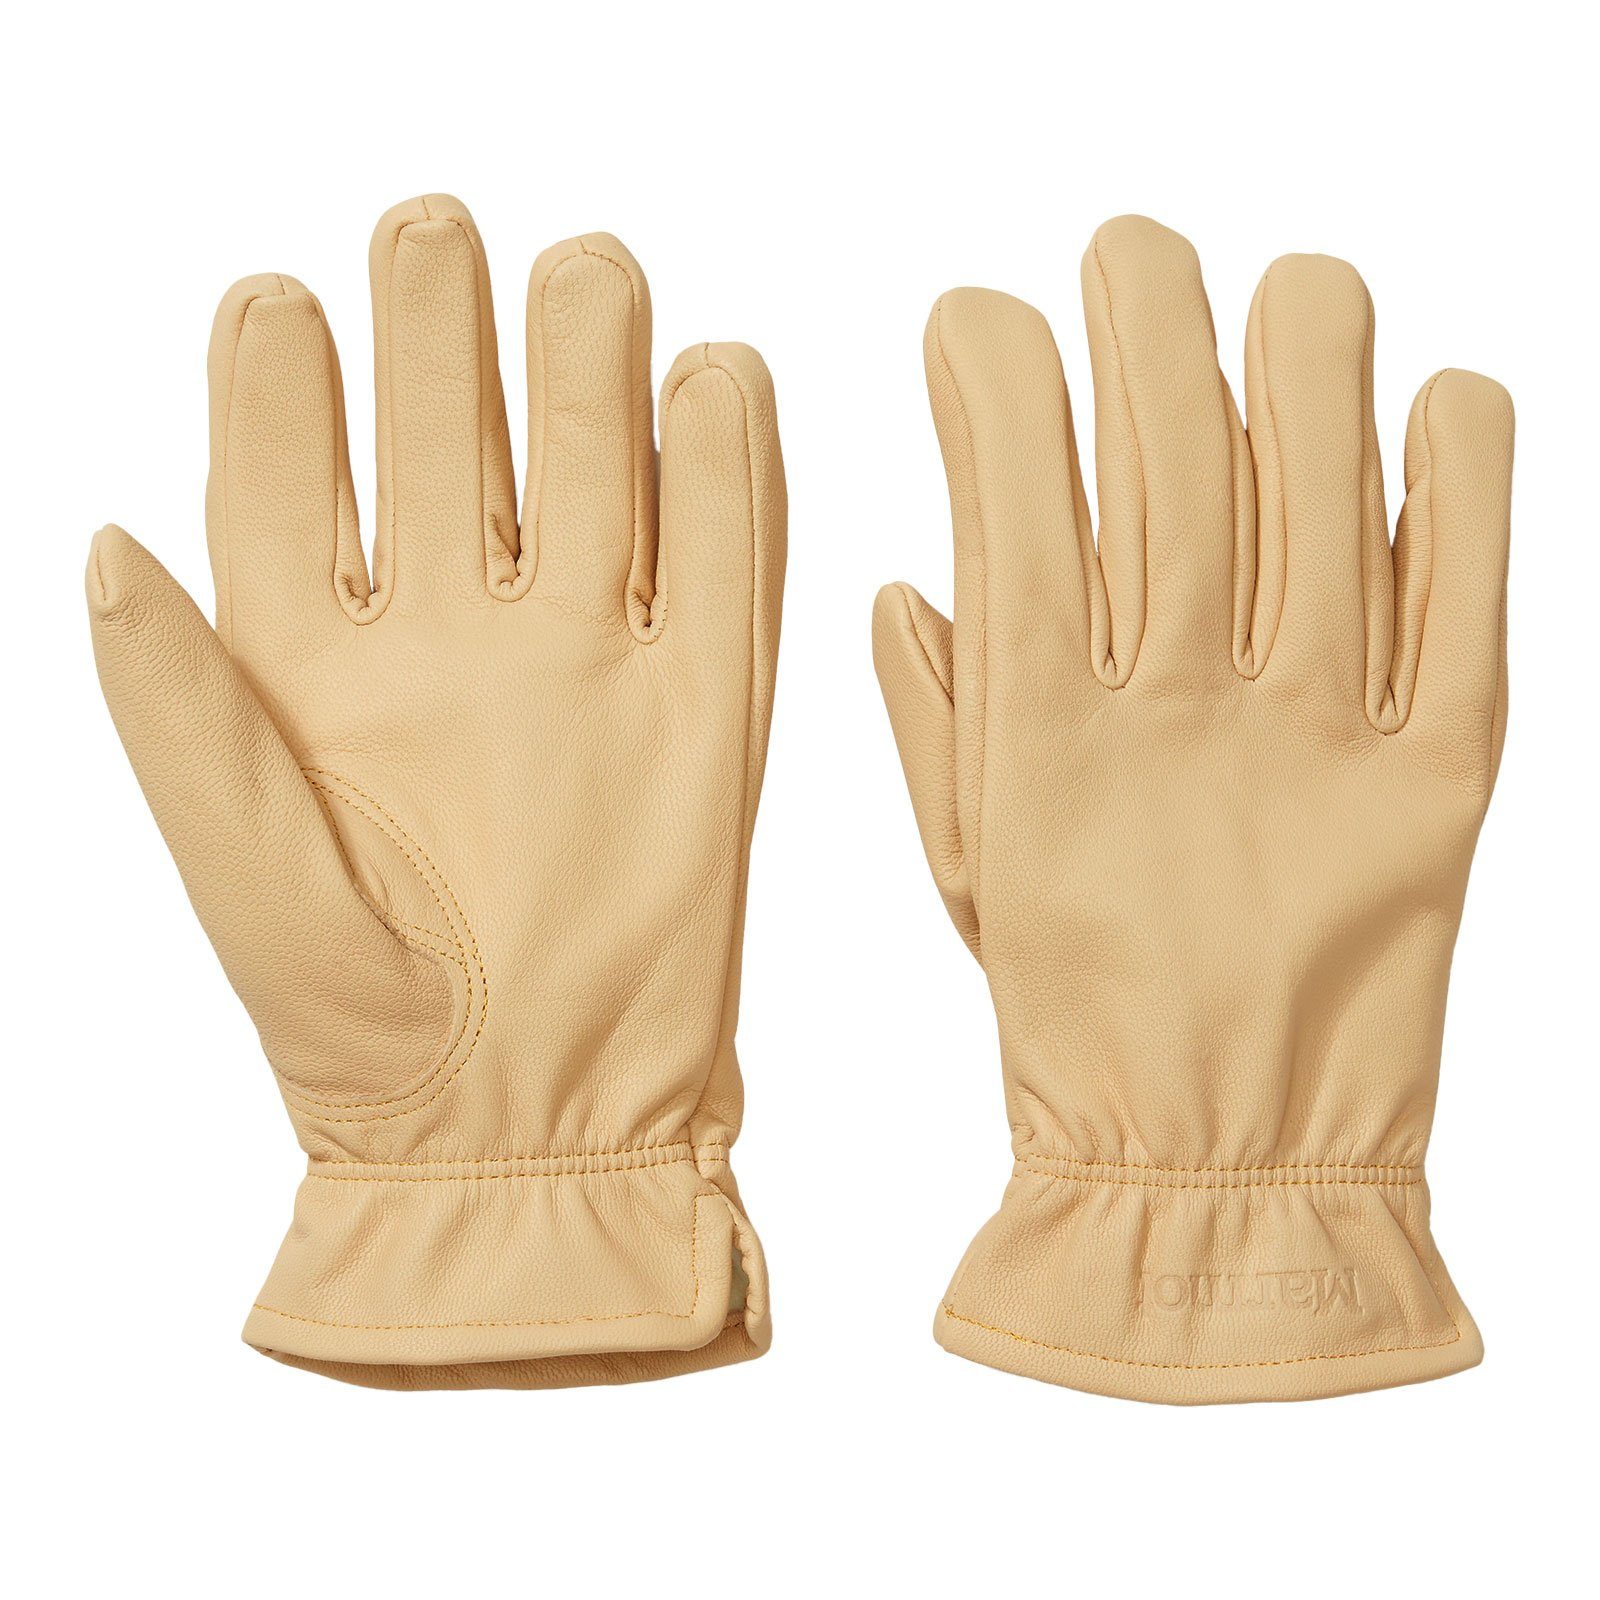 Marmot Skihandschuhe Basic Work Glove mit eingeprägtem Markenlogo 7291 tan